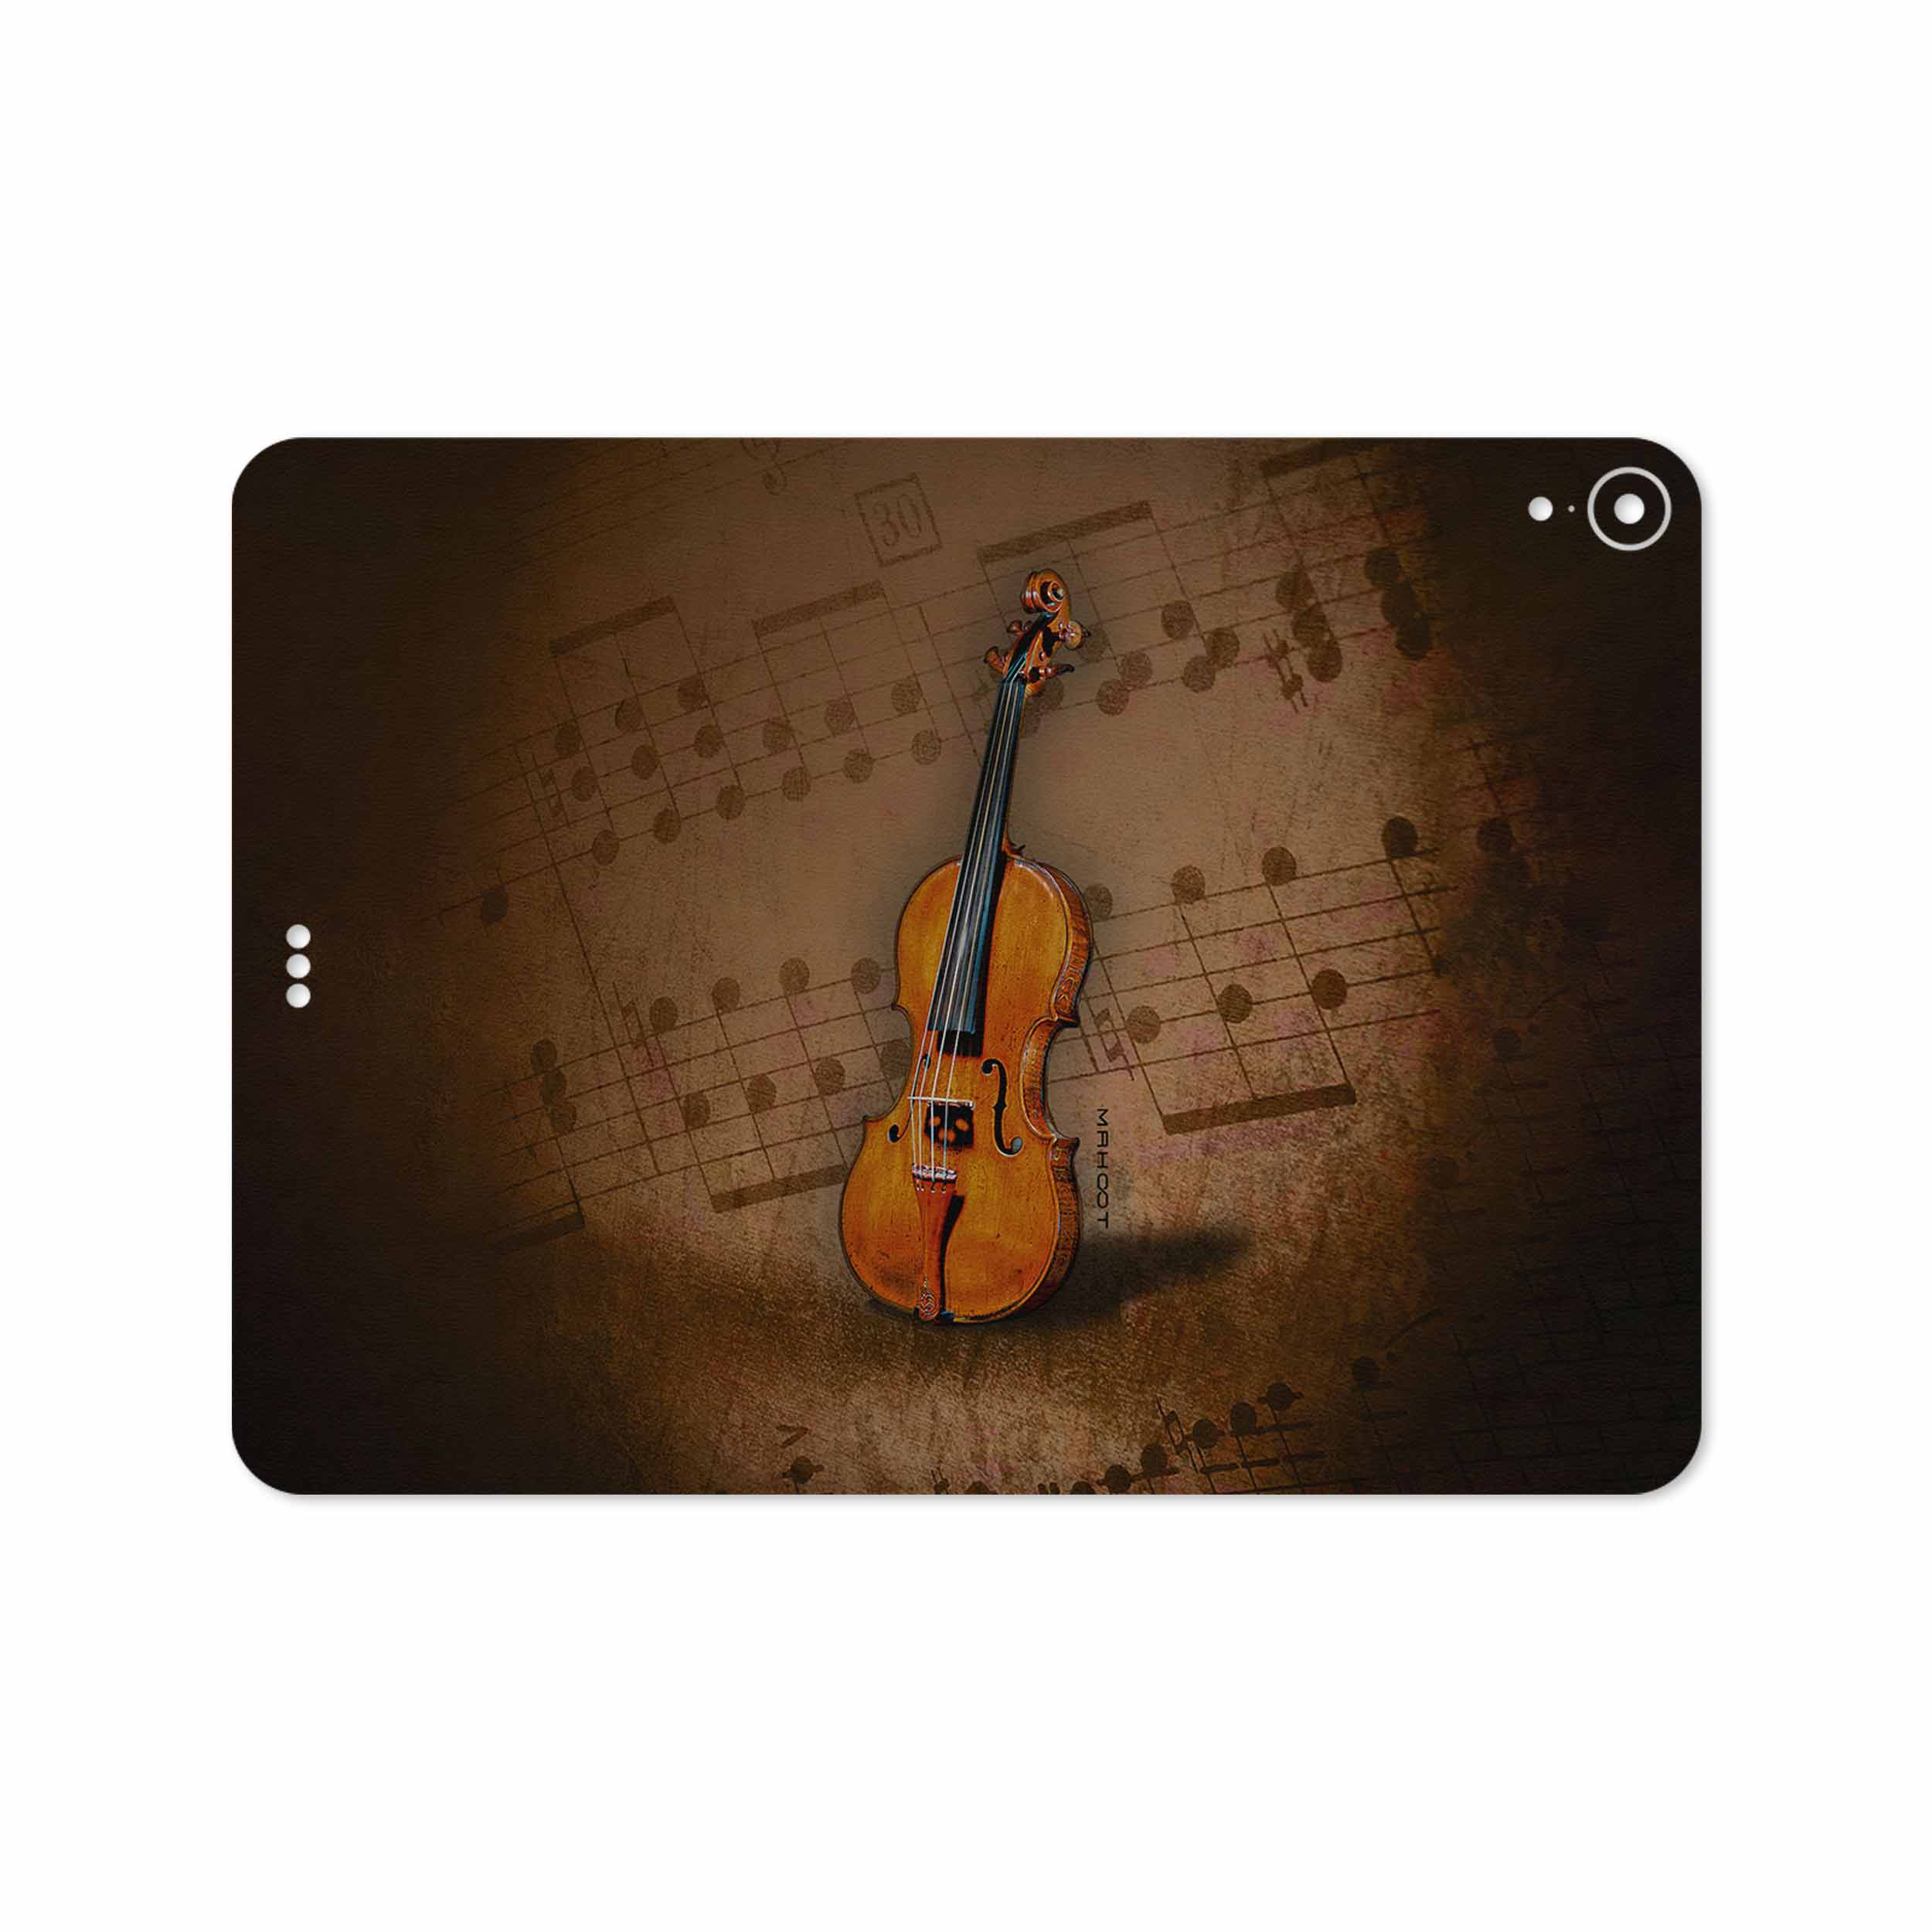 برچسب پوششی ماهوت مدل Violin-Instrument مناسب برای تبلت اپل iPad Pro 11 2018 A1979